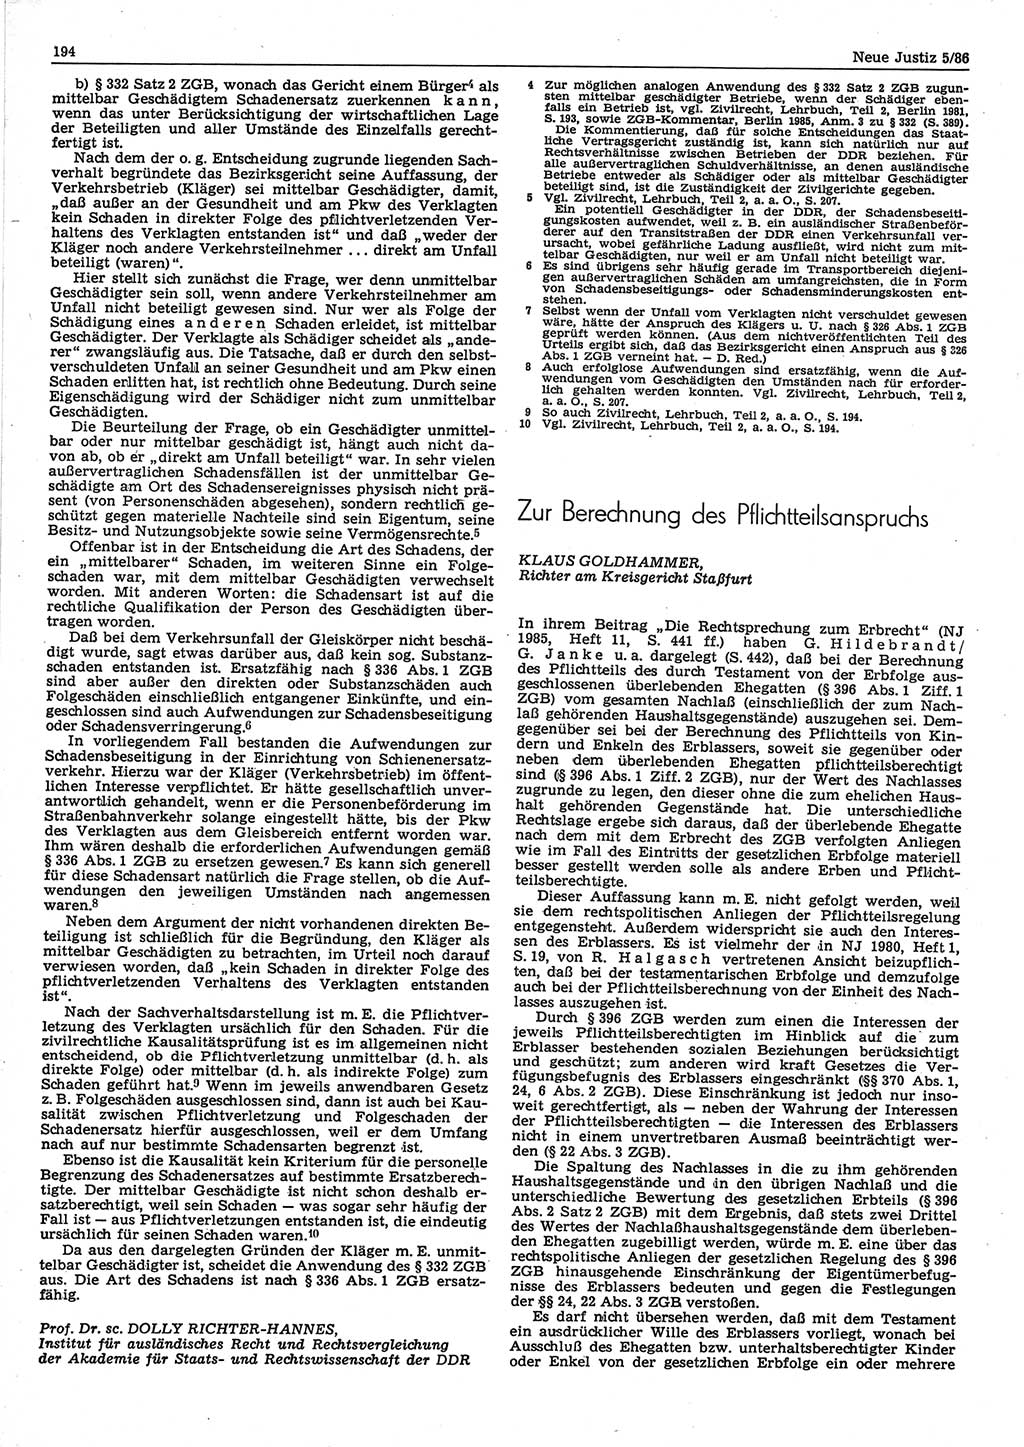 Neue Justiz (NJ), Zeitschrift für sozialistisches Recht und Gesetzlichkeit [Deutsche Demokratische Republik (DDR)], 40. Jahrgang 1986, Seite 194 (NJ DDR 1986, S. 194)